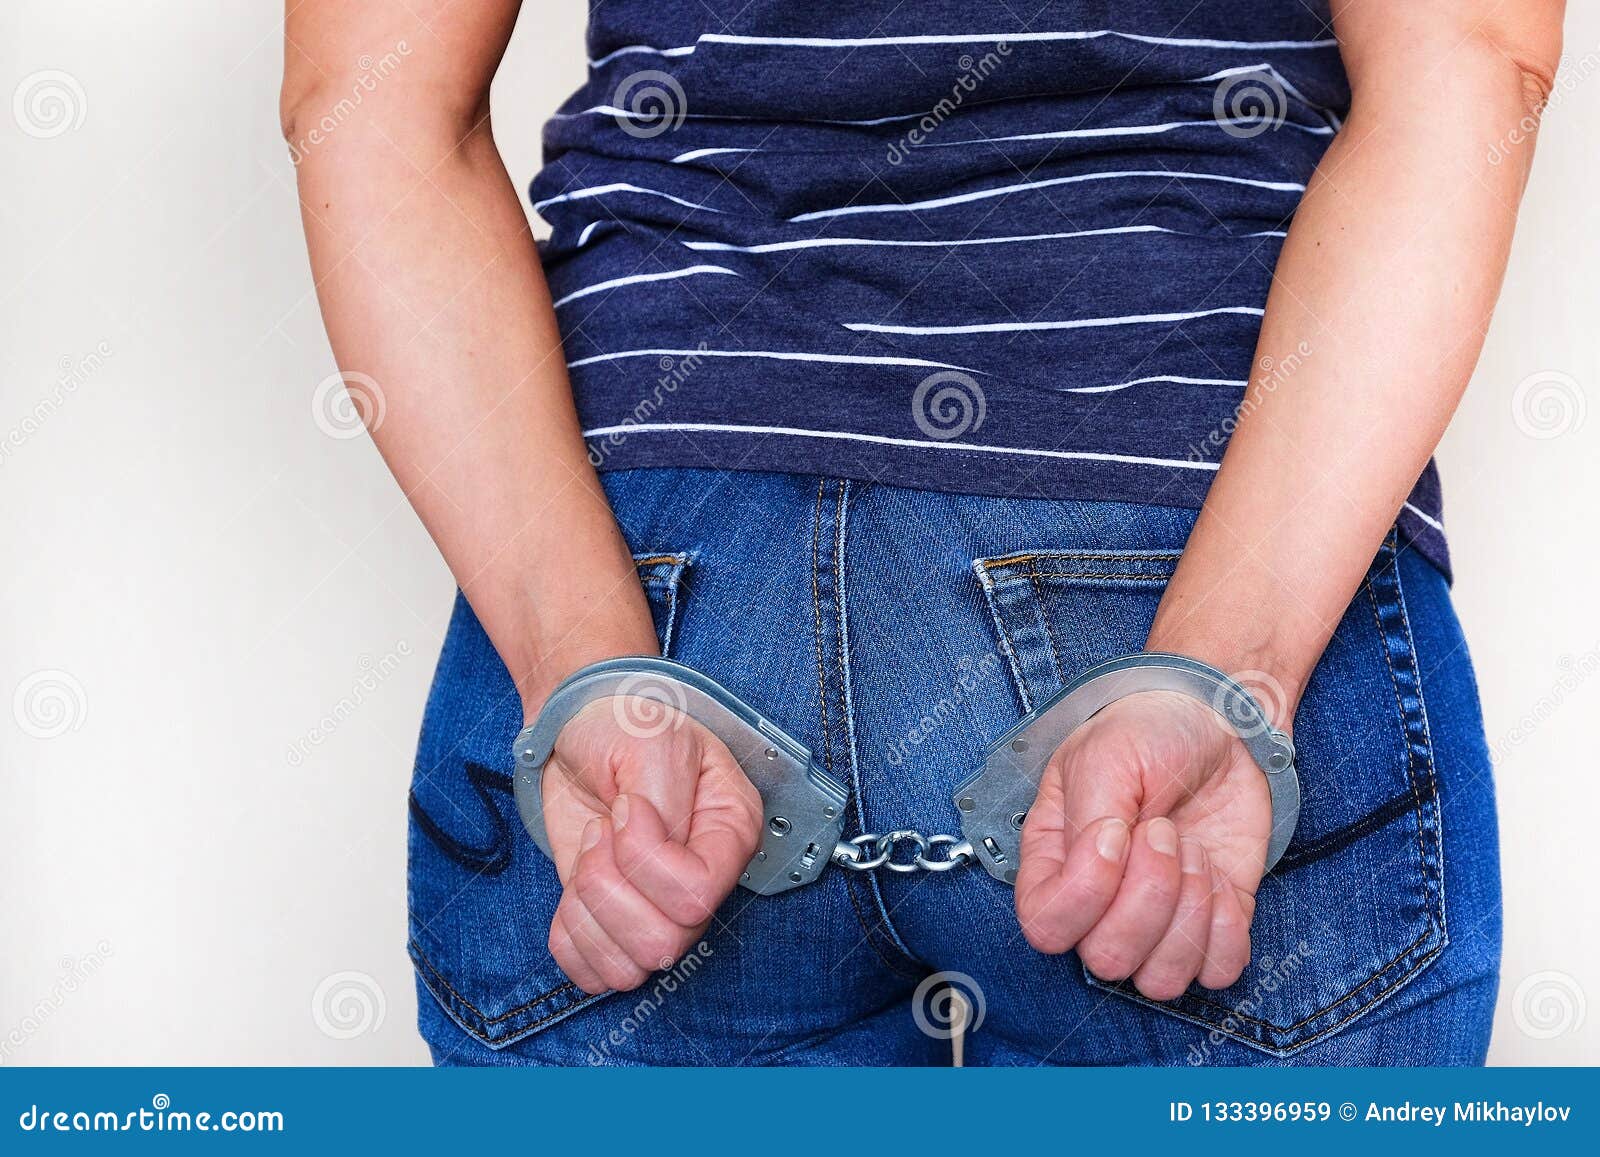 Вид сбоку женщины в наручниках за спиной.